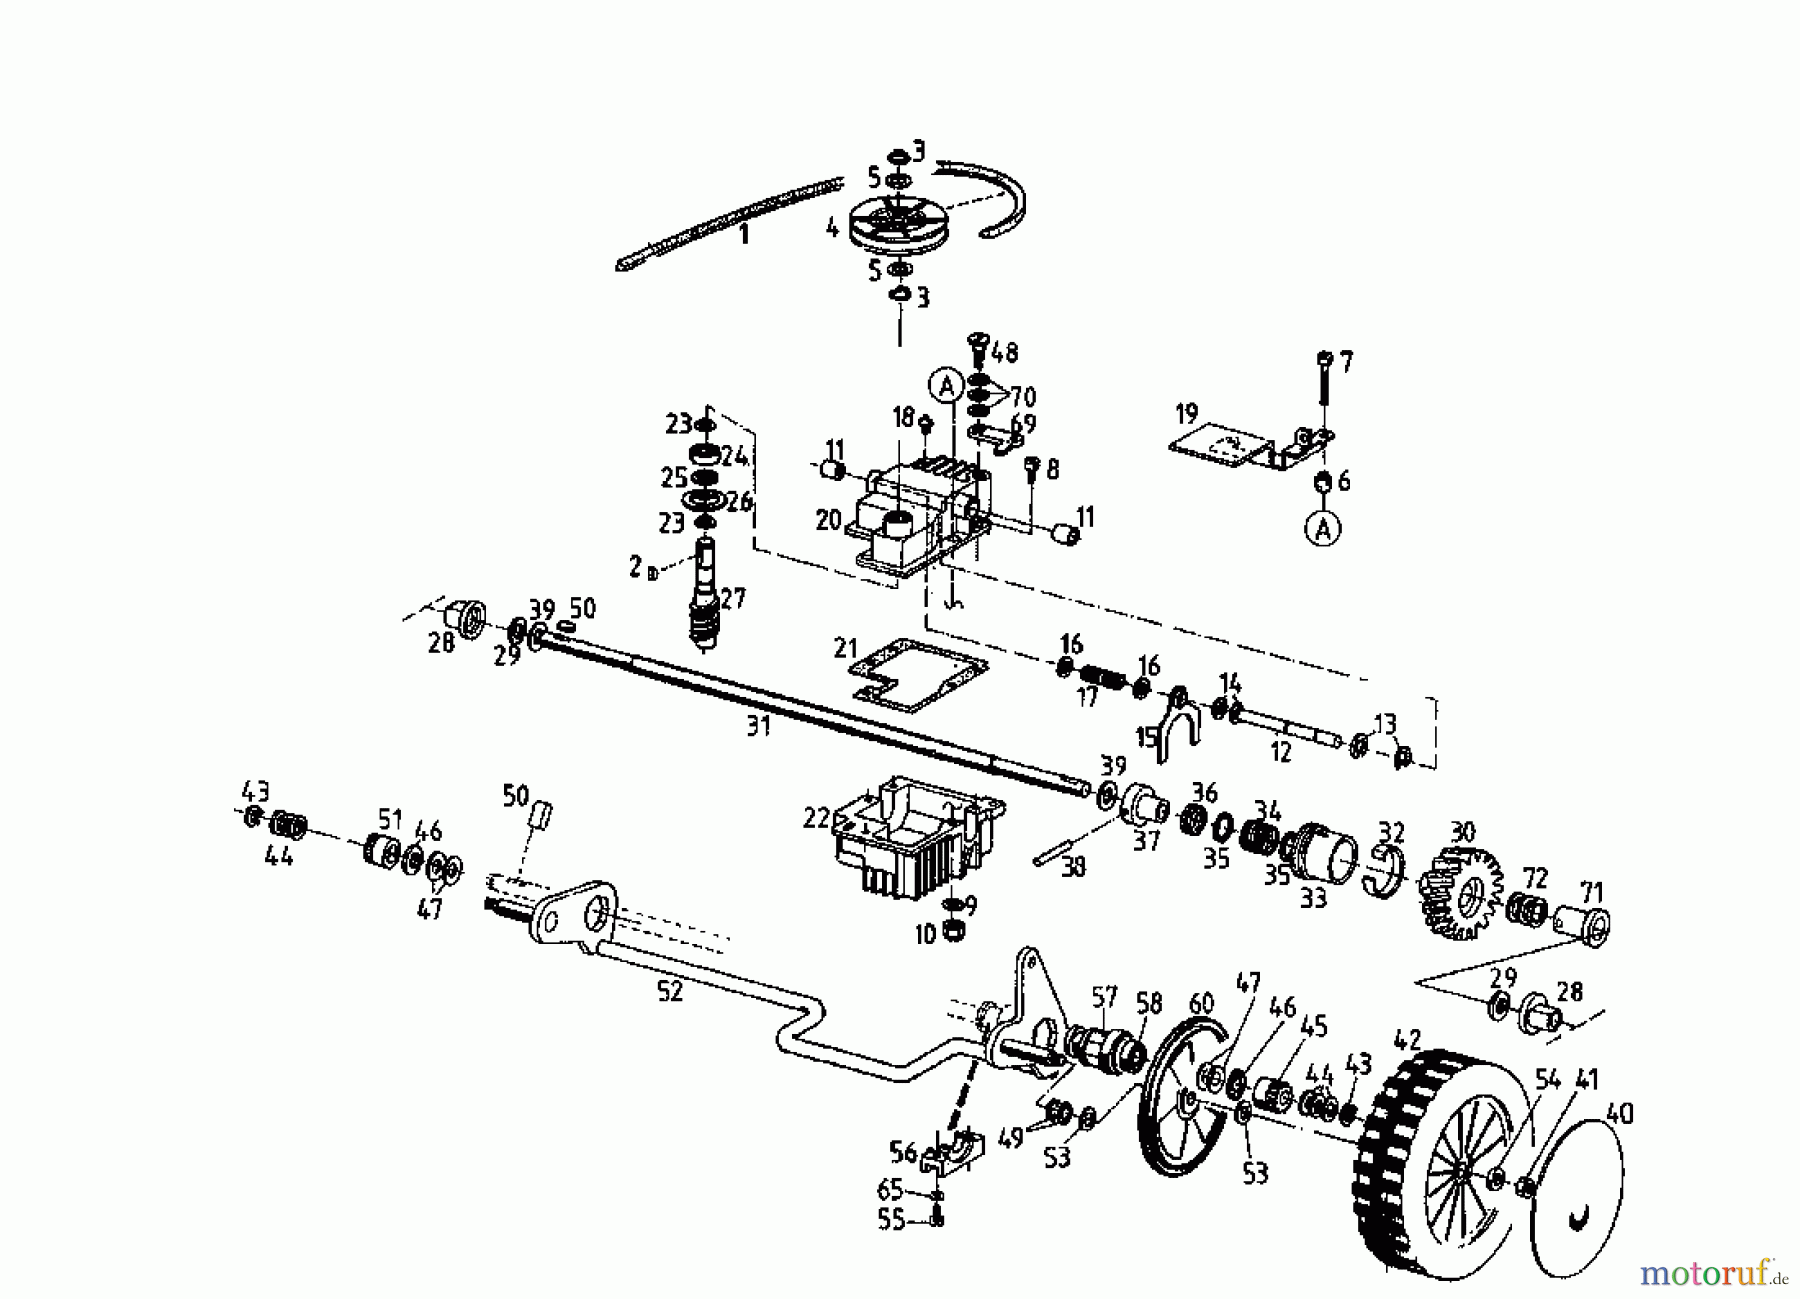  Gutbrod Petrol mower self propelled MH 544 R 04031.04  (1996) Gearbox, Wheels